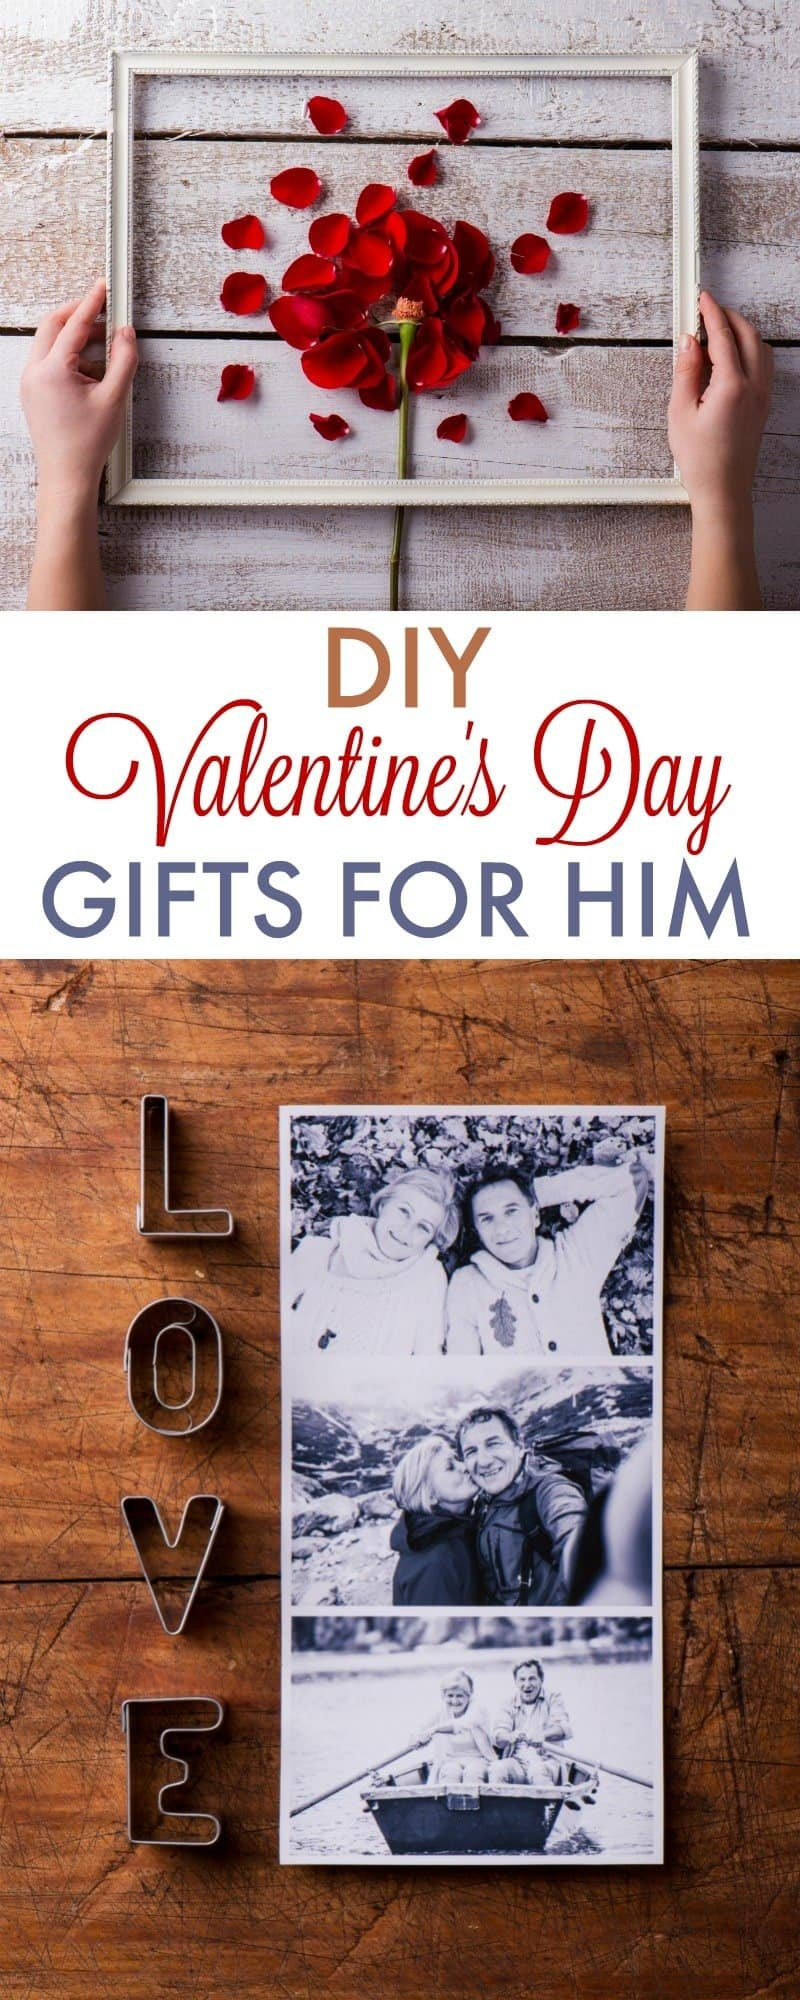 Best ideas about DIY Valentine Gift For Boyfriend
. Save or Pin DIY Valentine s Day Gifts for Boyfriend 730 Sage Street Now.